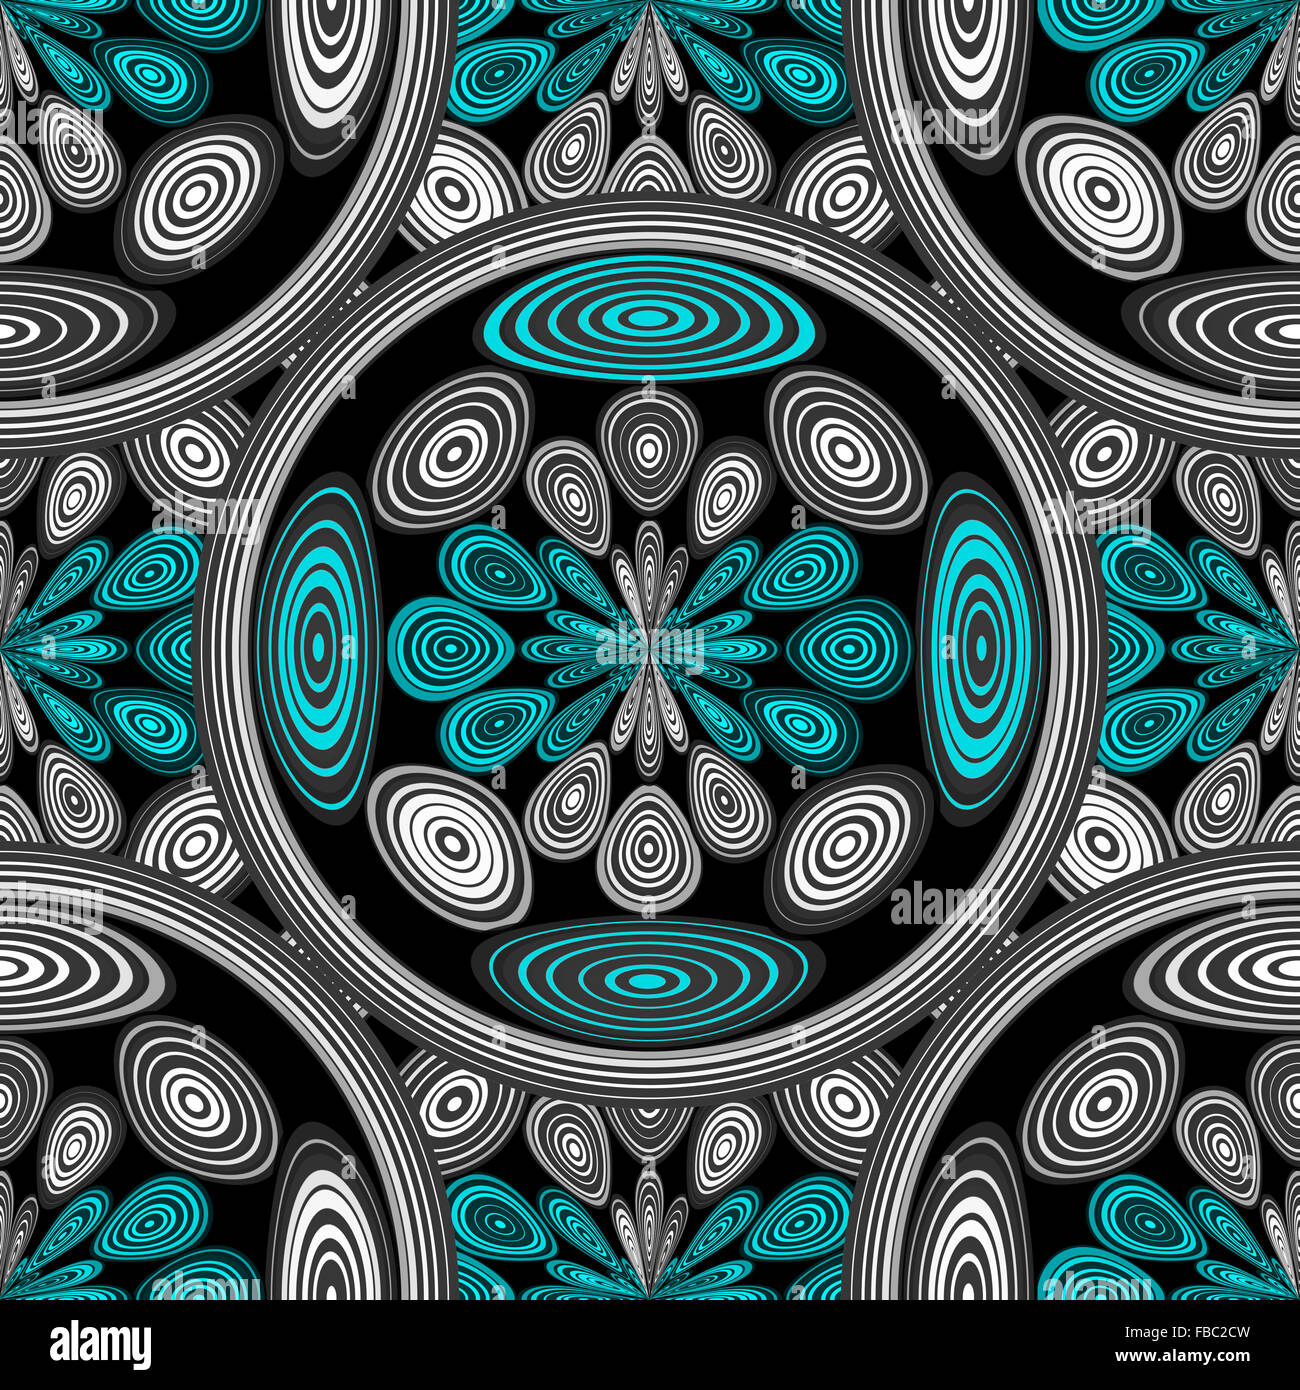 Arabesque geometrico in azzurro e bianco e nero, fatta con un disegno di cerchi ed ellissi. Geometrica arte digitale Foto Stock